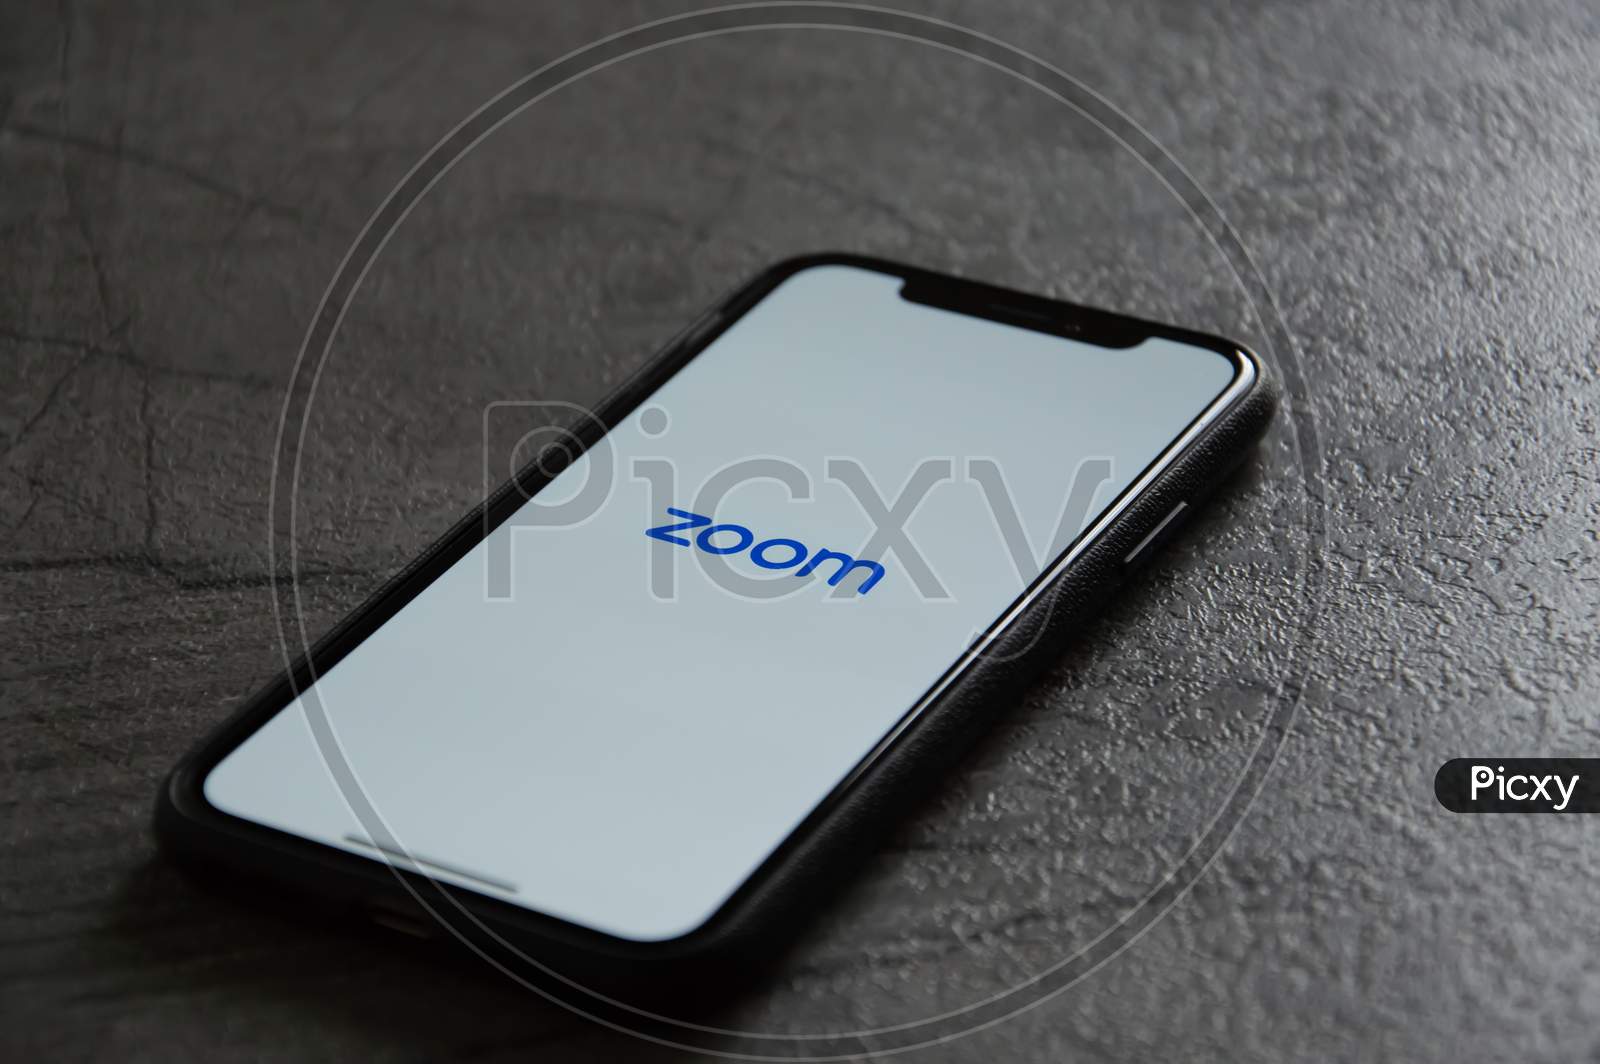 Zoom meetings app on smartphone.